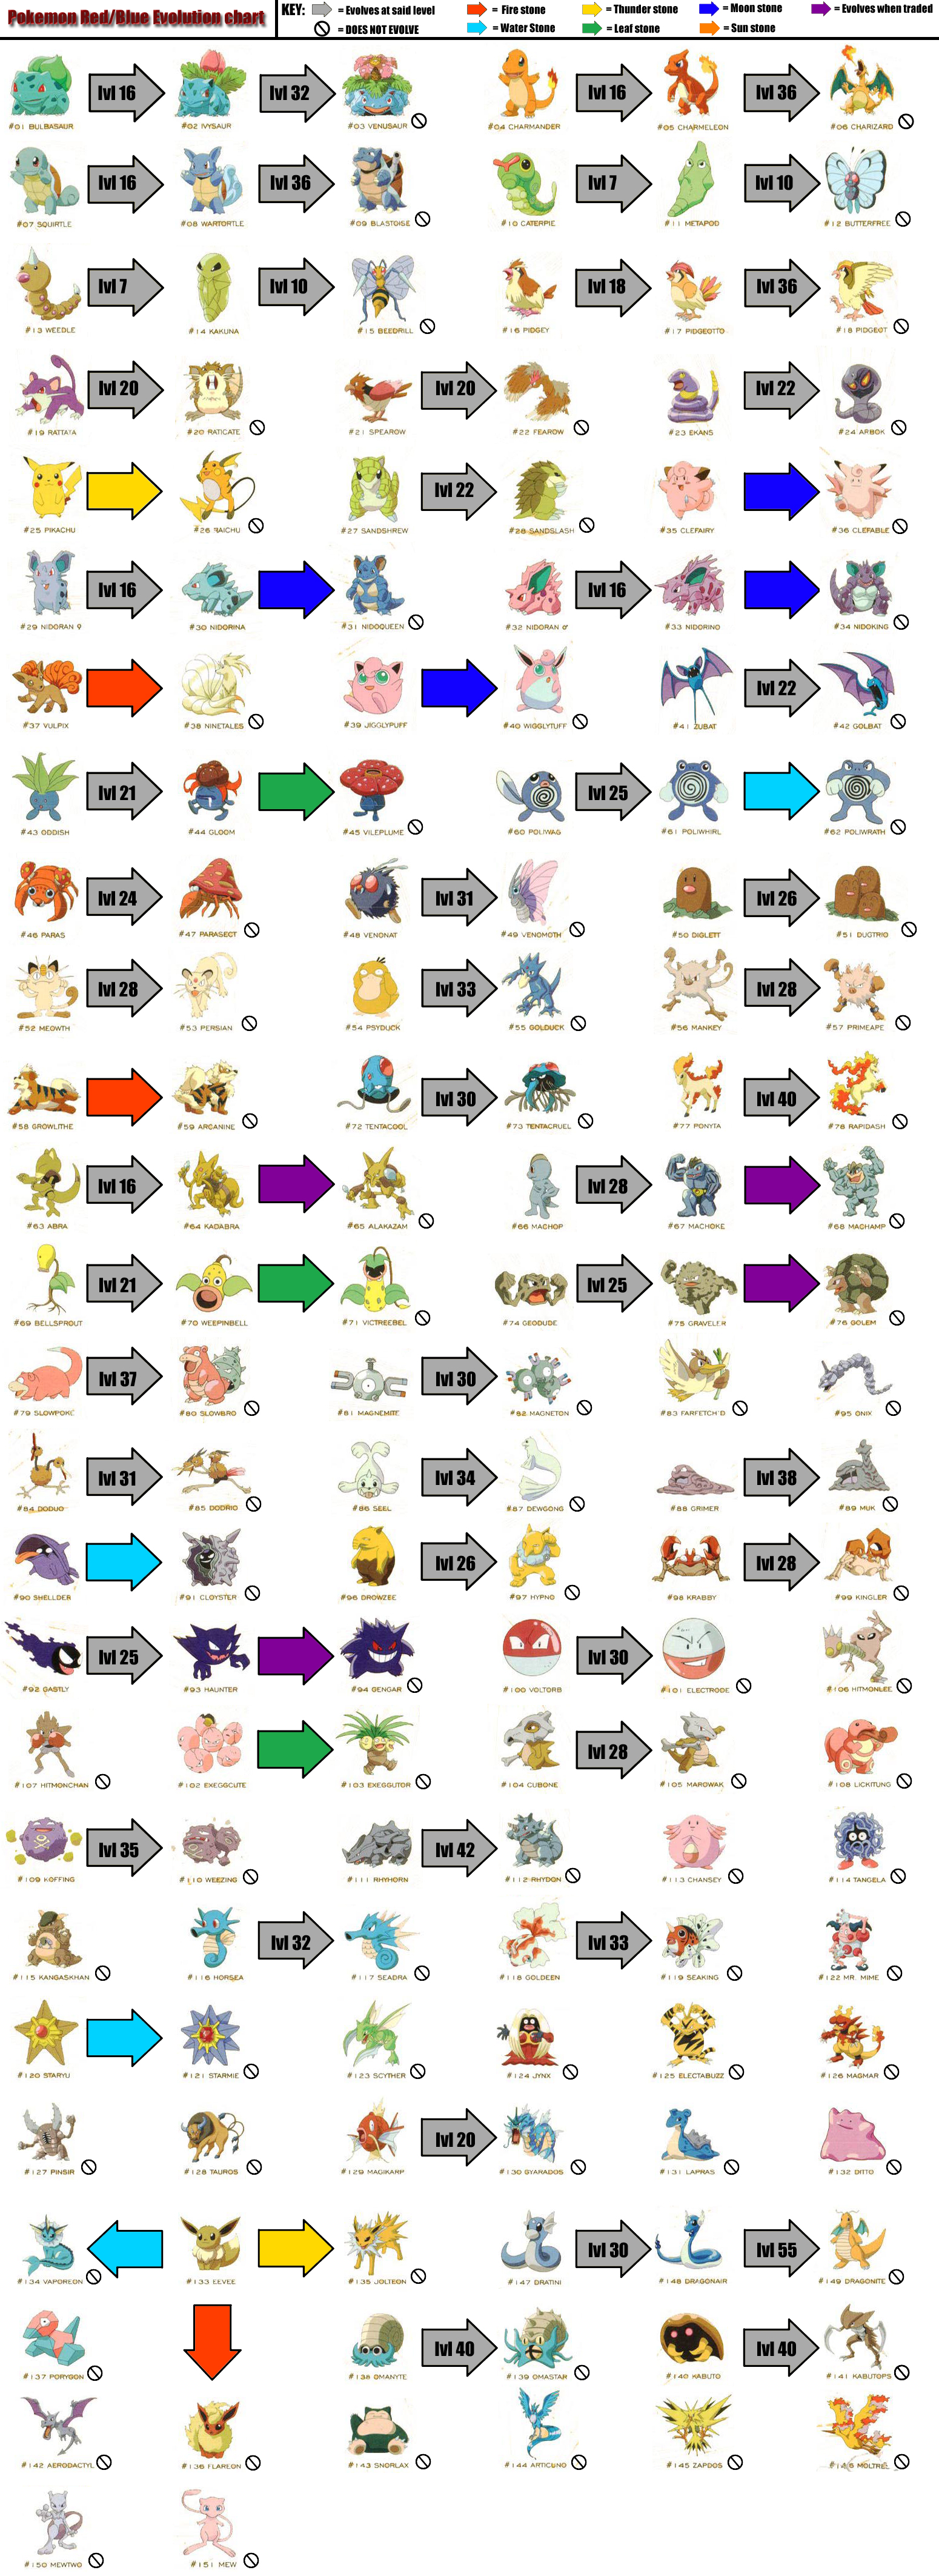 Alpha Sapphire Pokemon Evolution Chart